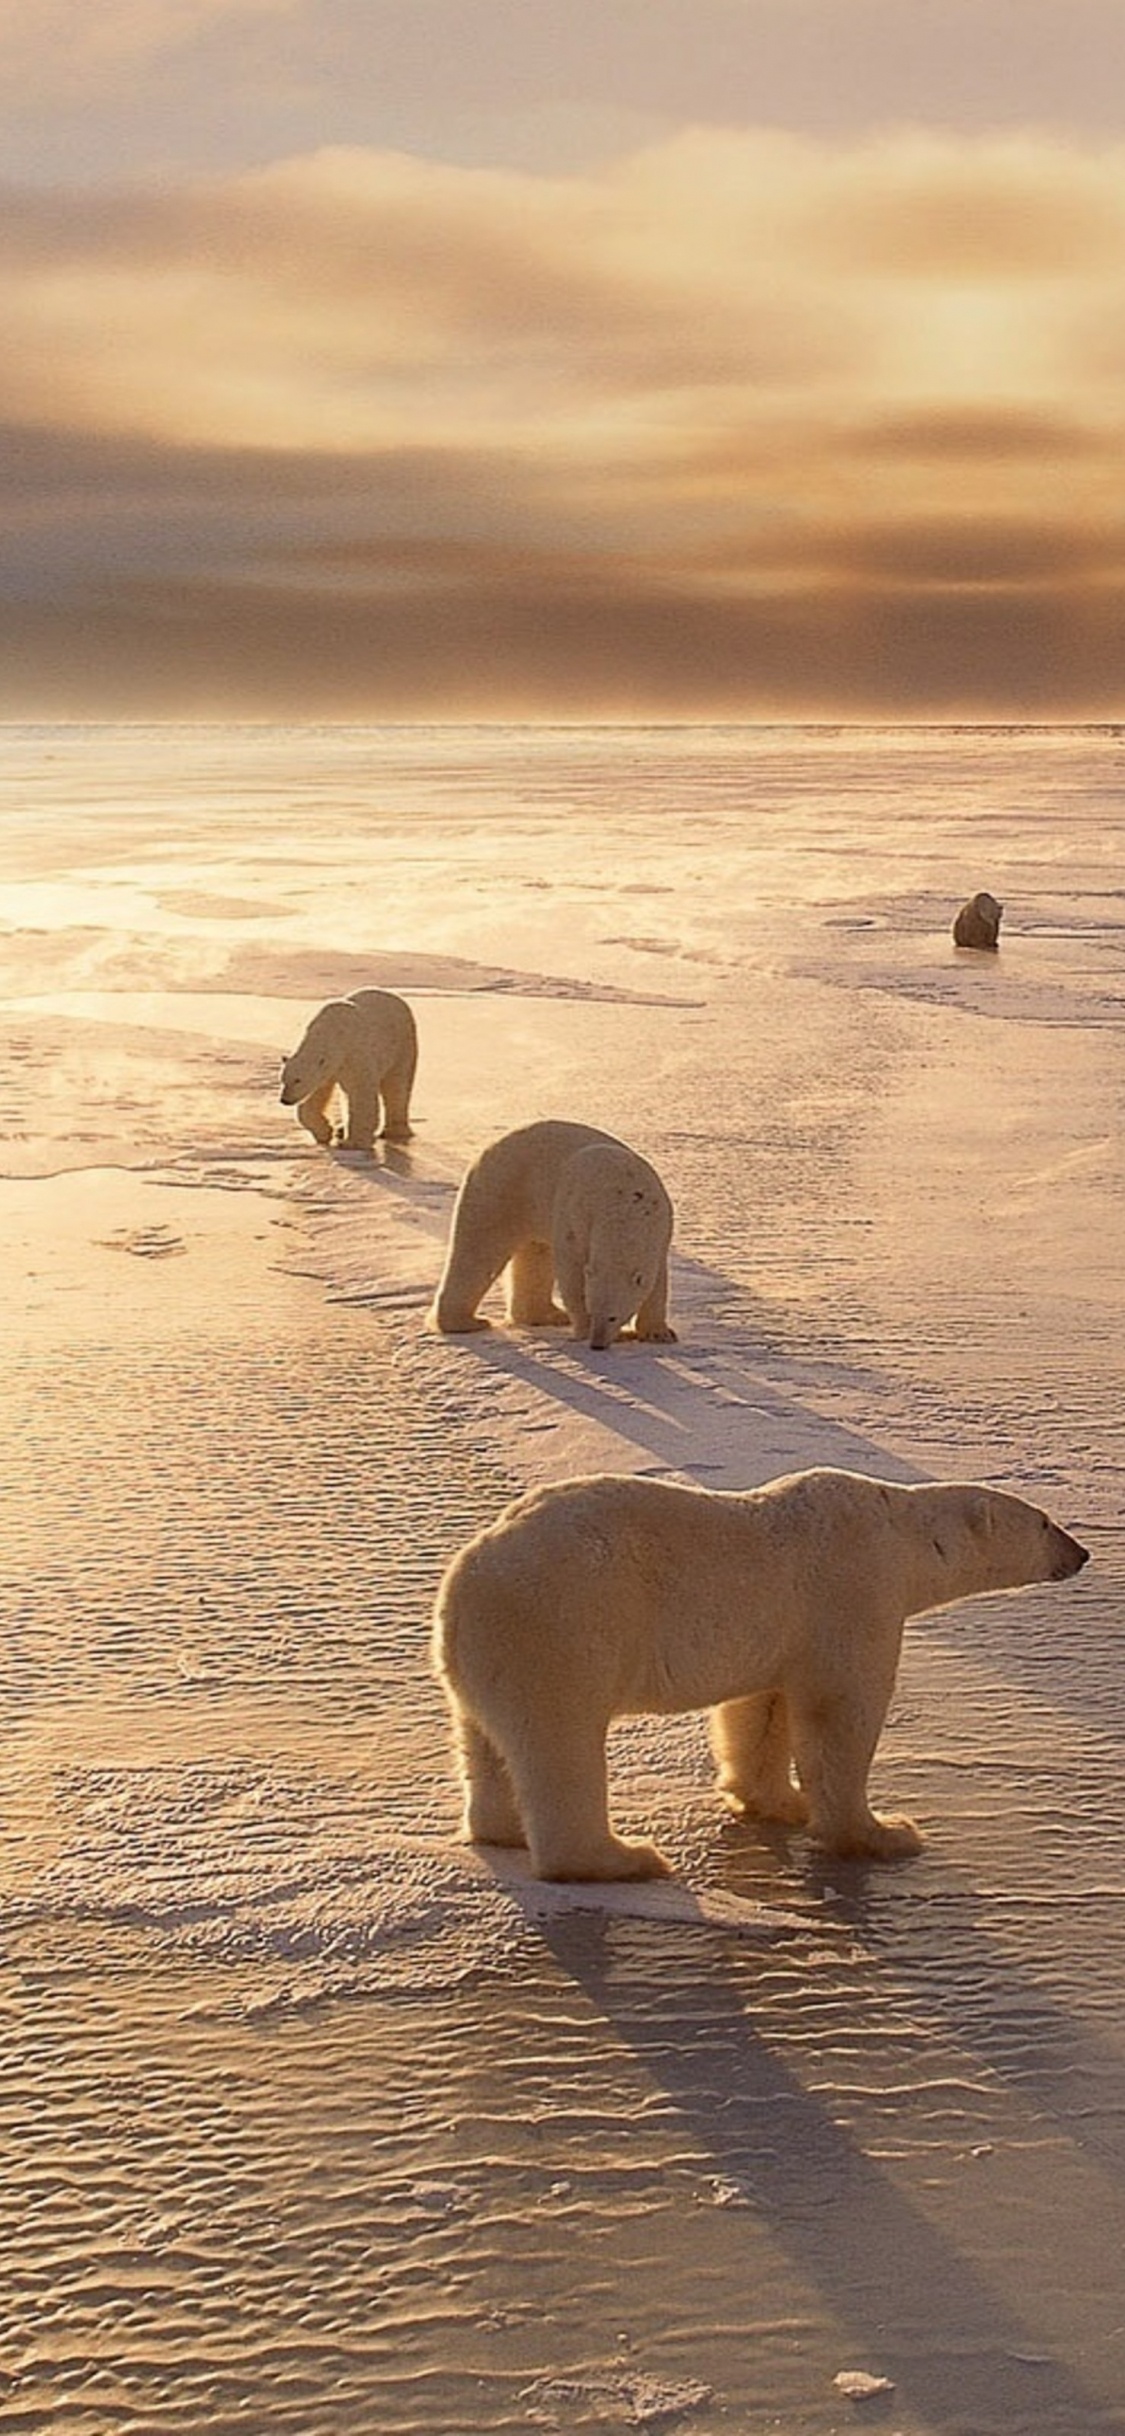 北极熊, 冷静, 沙, 野生动物, 北极 壁纸 1125x2436 允许